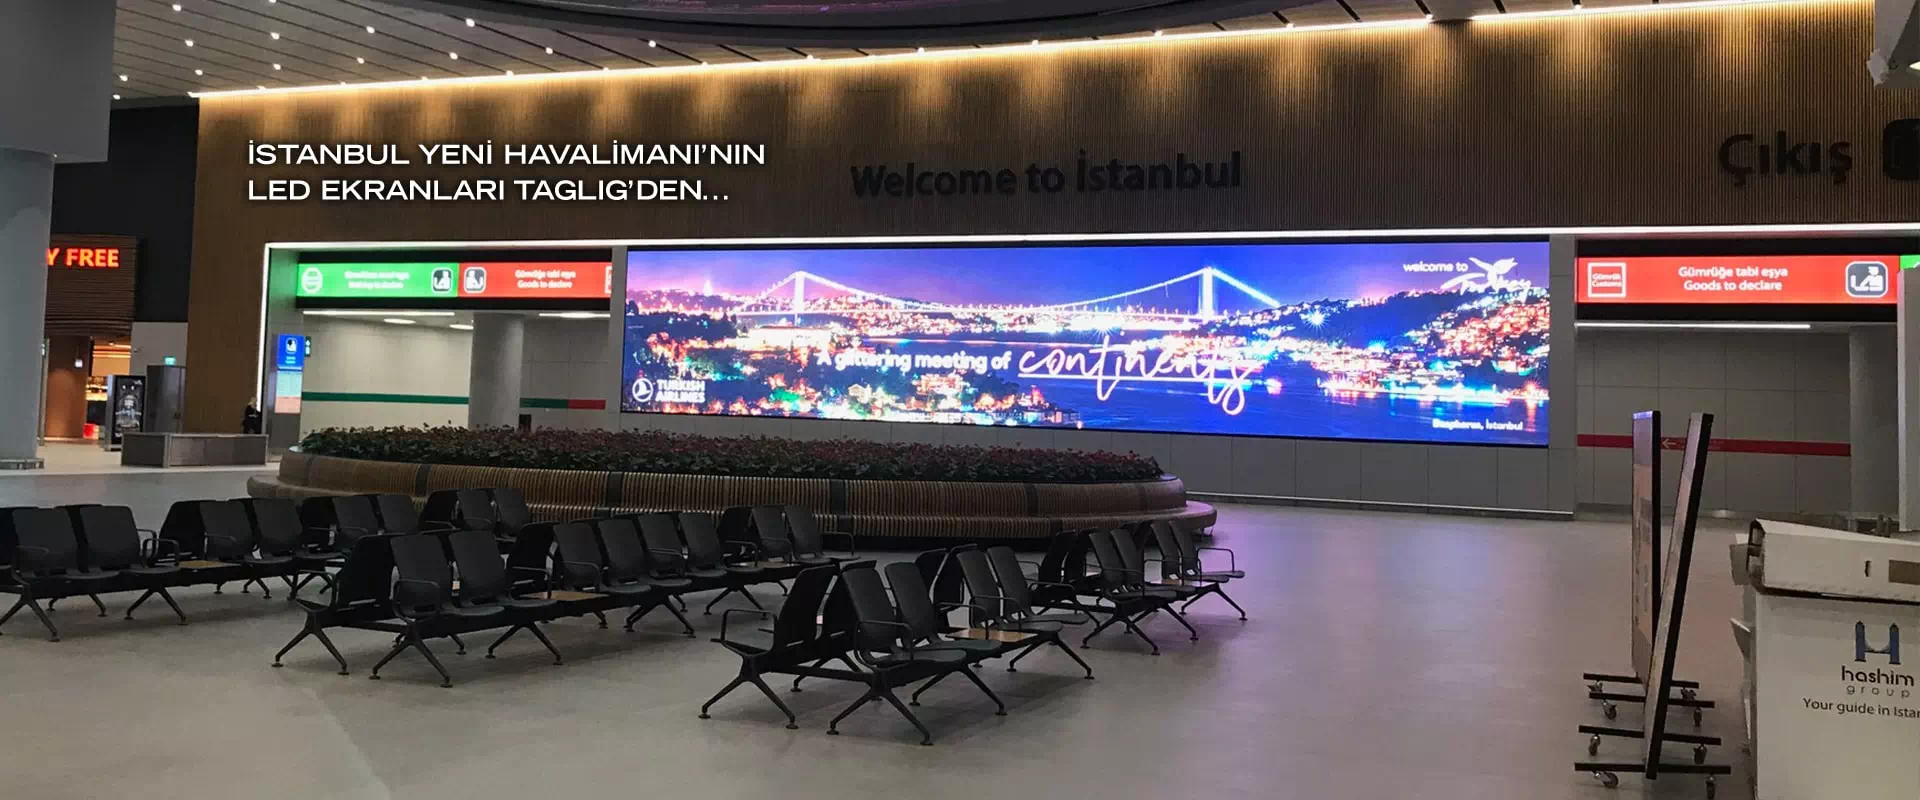 İstanbul Yeni Havalimanı Taglig